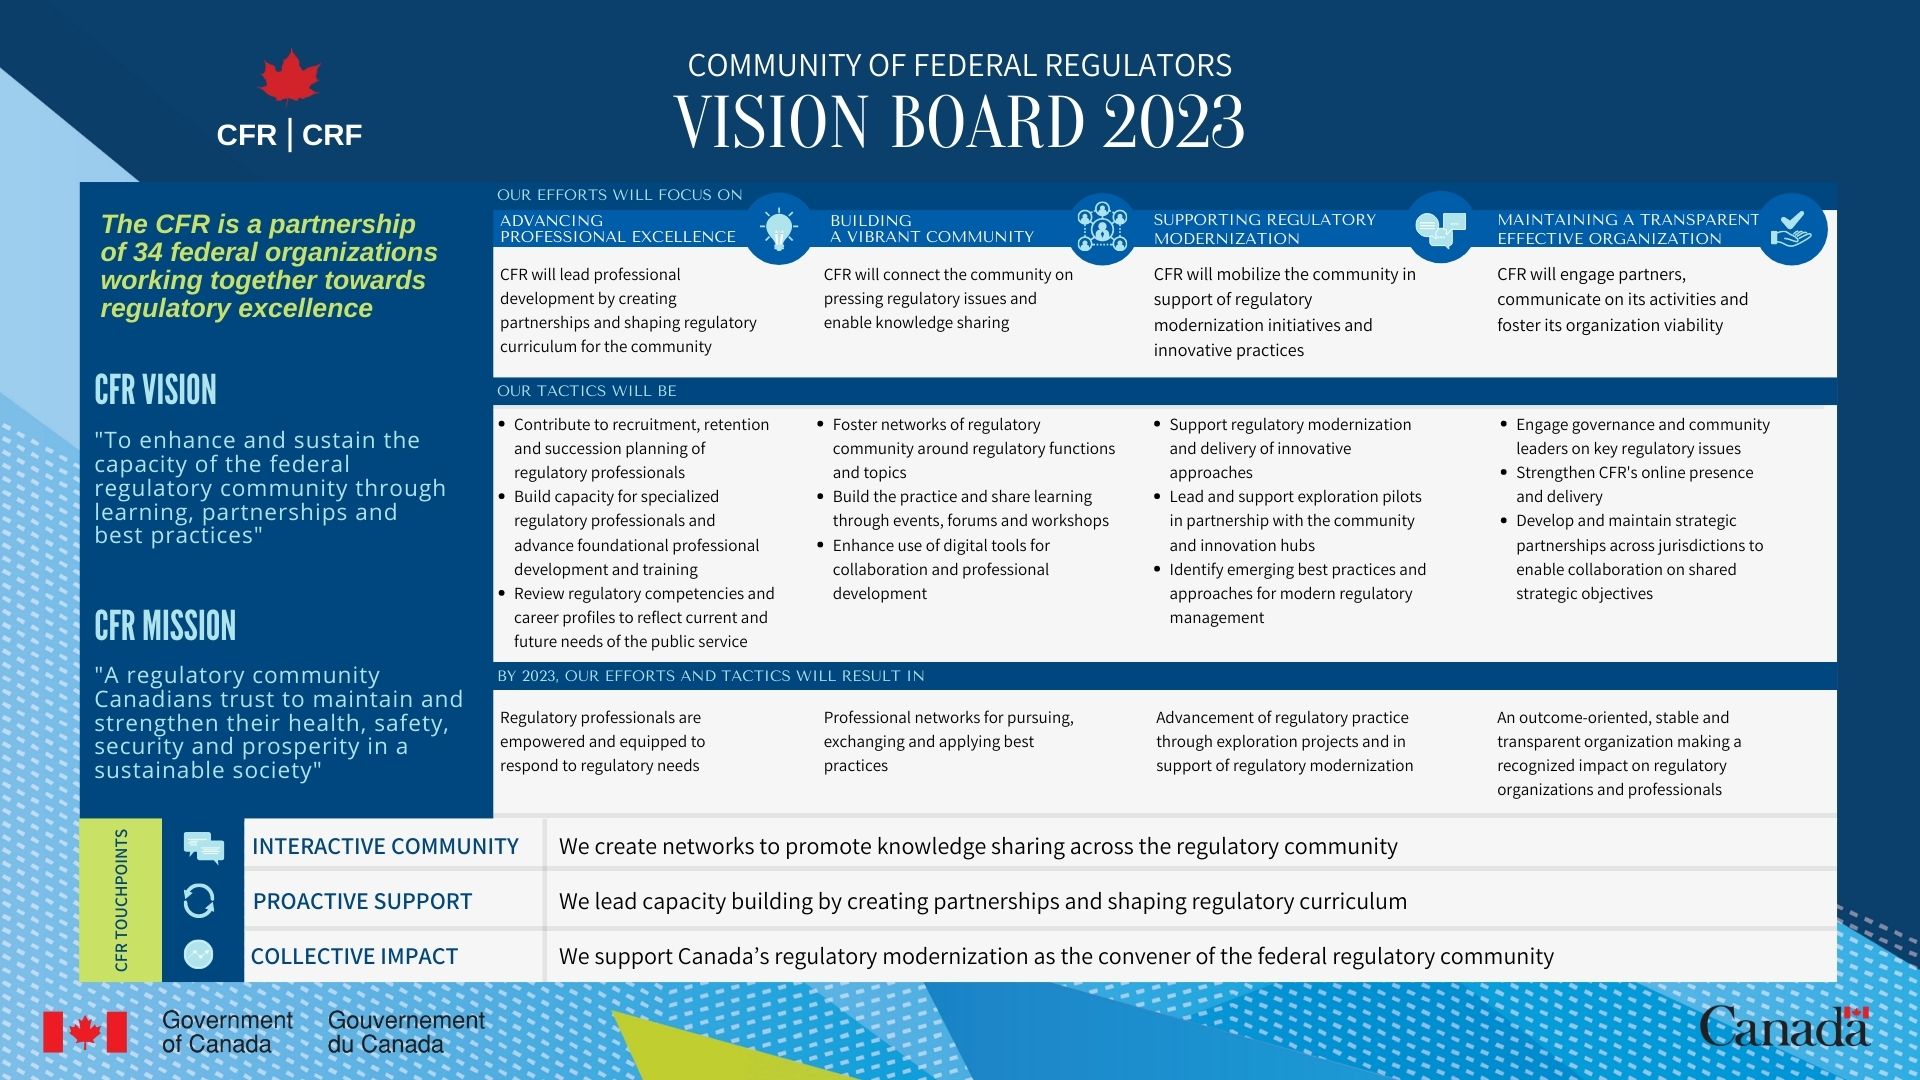 BIL CFR Business Plan 2020-2023.jpg